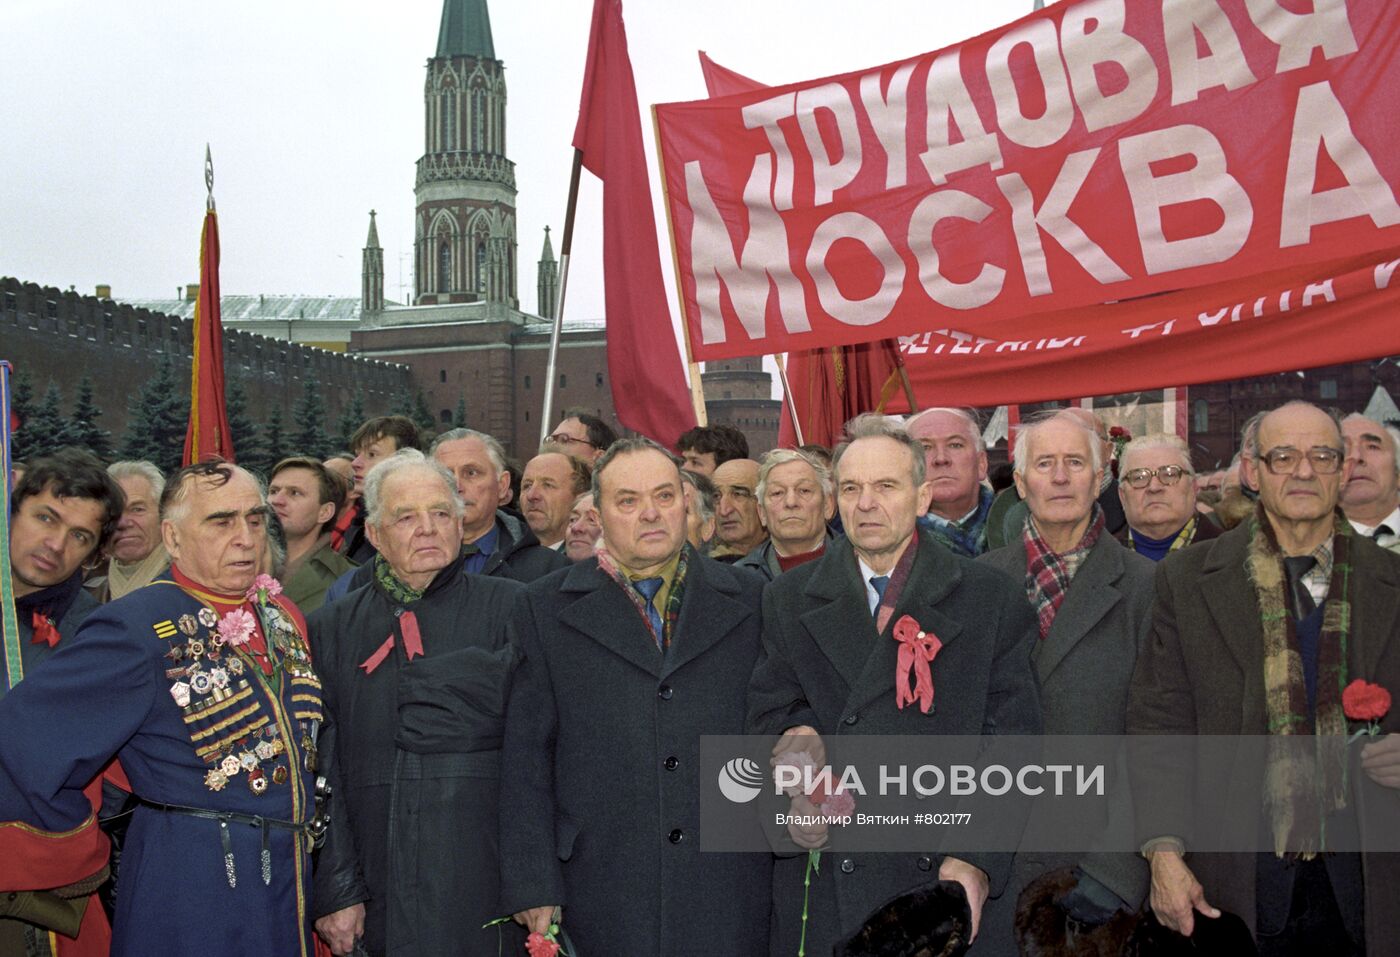 Участники митинга движений "Трудовая Москва" и "Союз рабочих"